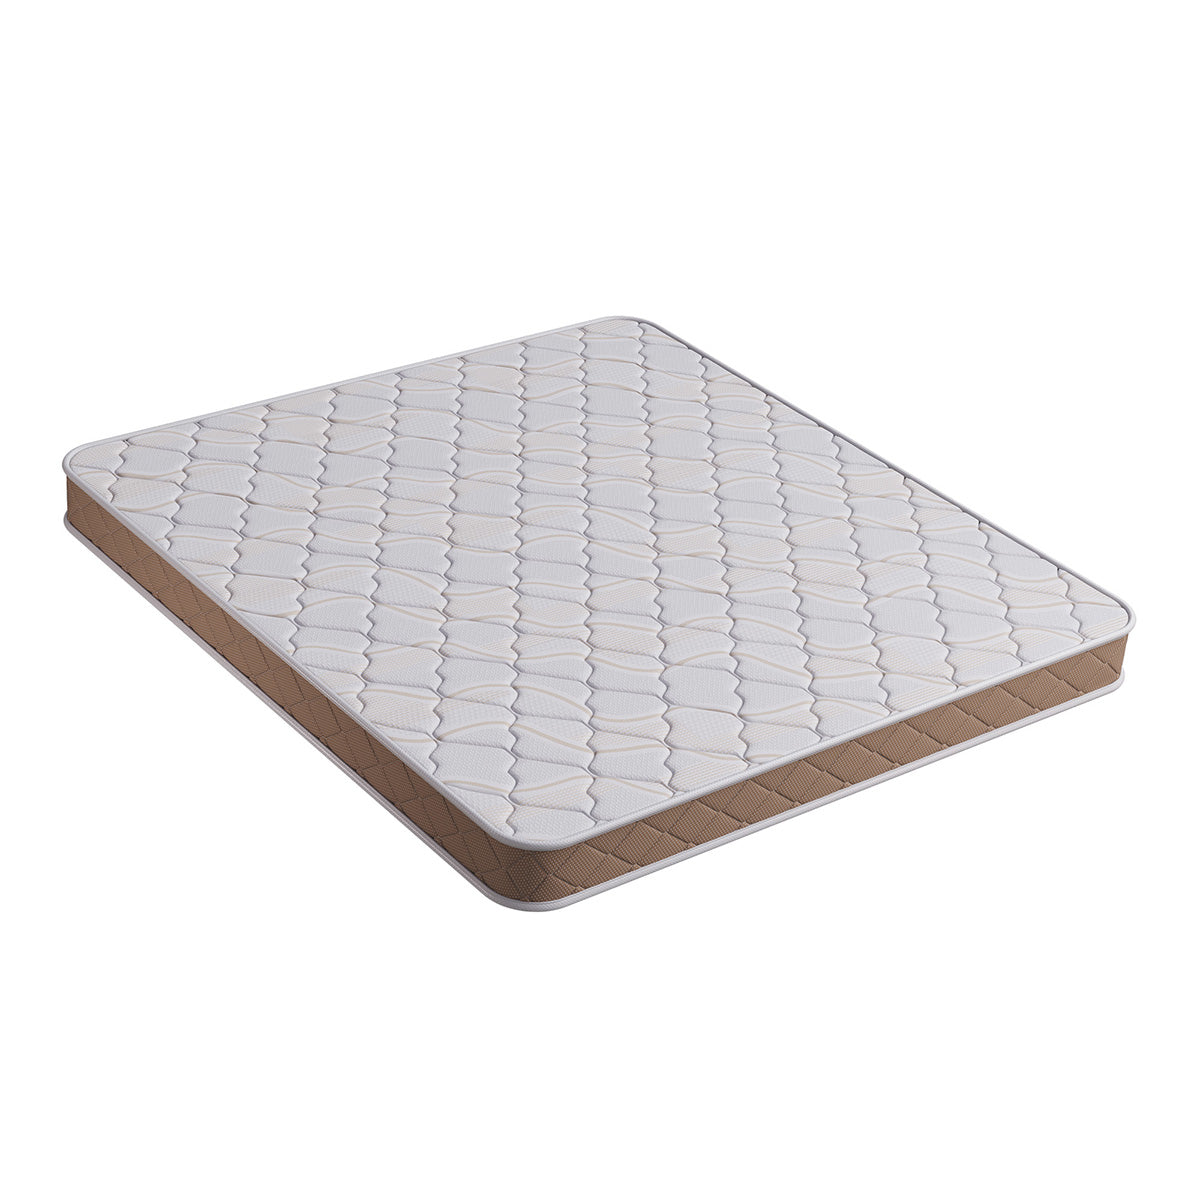 Kurlon Diamond Mattress | Medium soft mattress